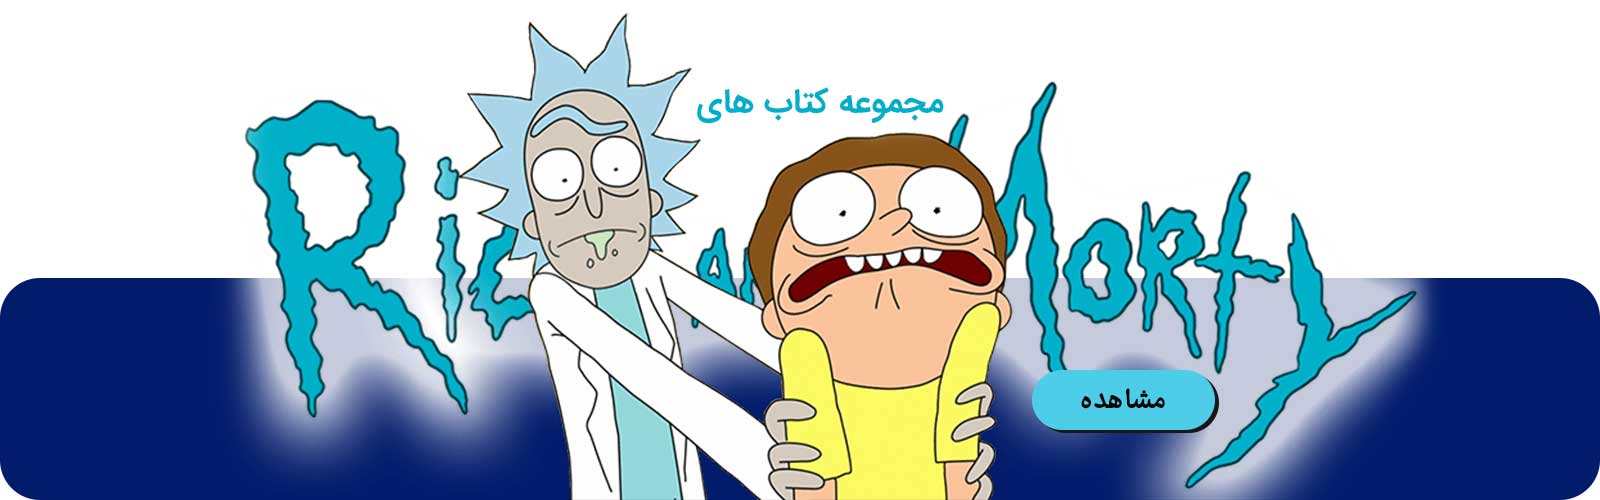 مجموعه Rick and Morty